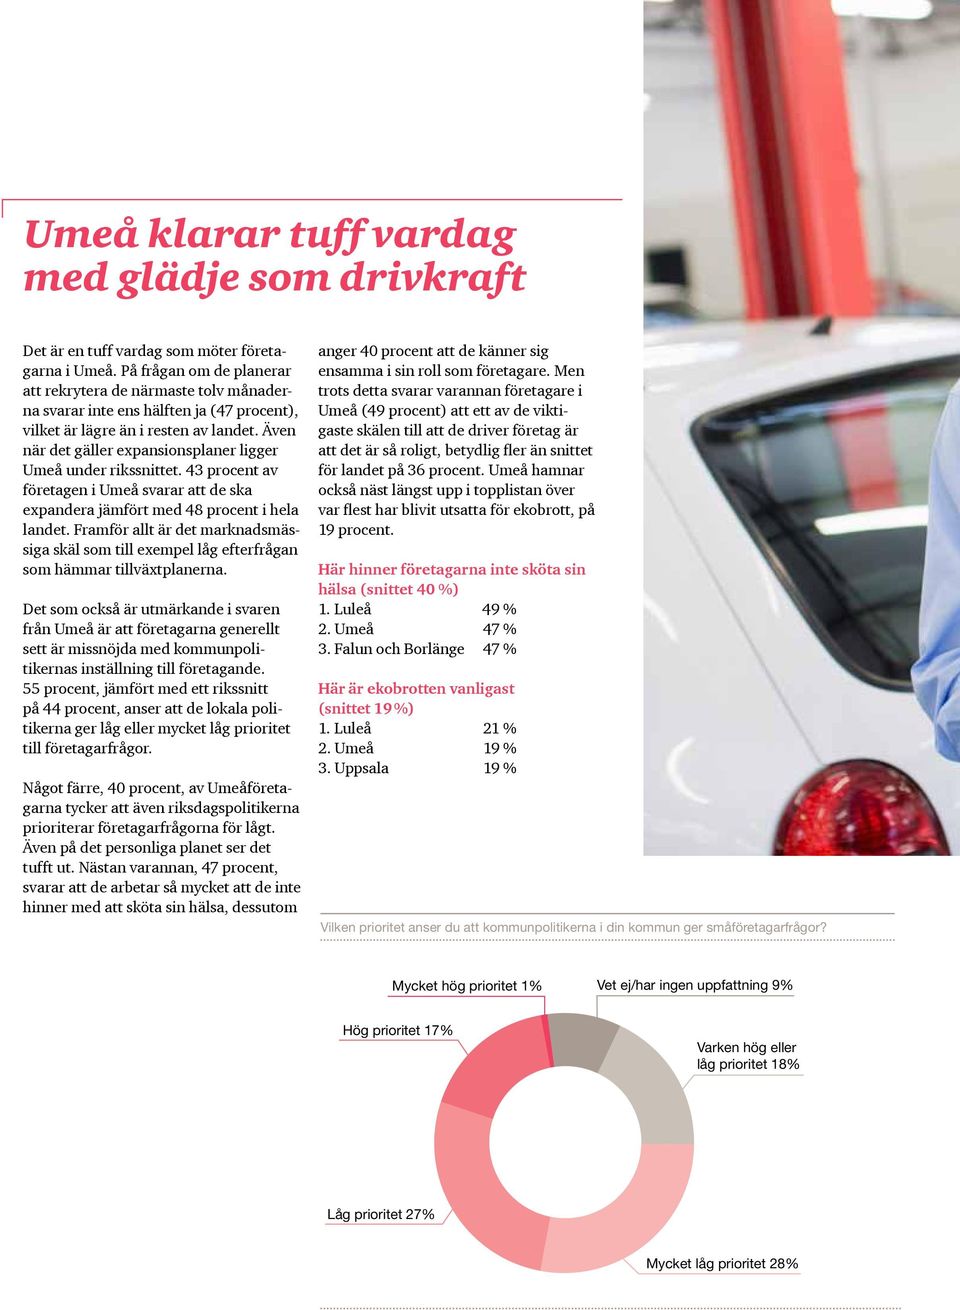 Även när det gäller expansionsplaner ligger Umeå under rikssnittet. 43 procent av företagen i Umeå svarar att de ska expandera jämfört med 48 procent i hela landet.